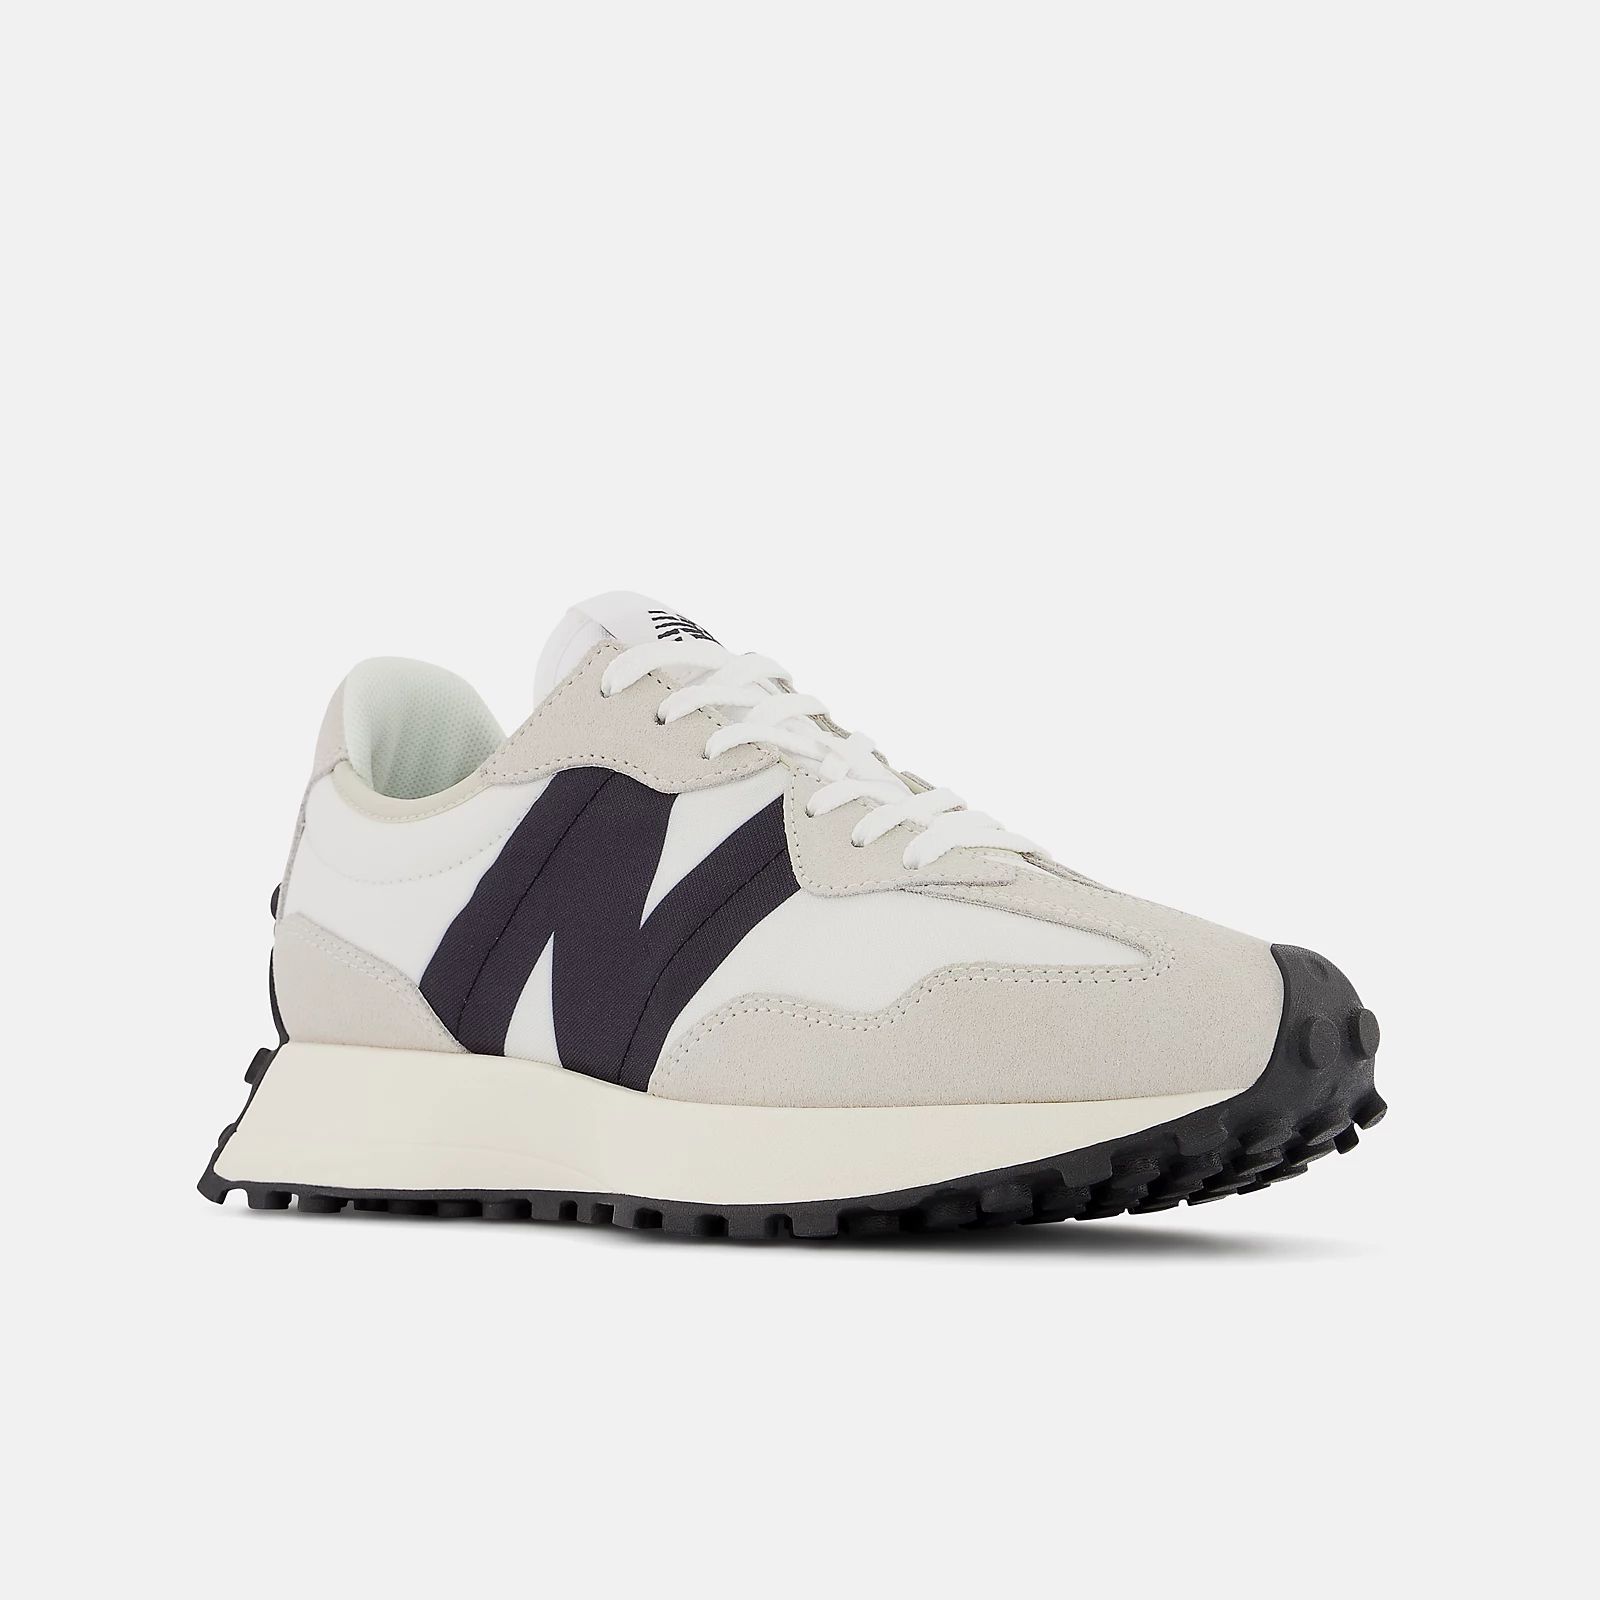 327 | New Balance Athletic Shoe